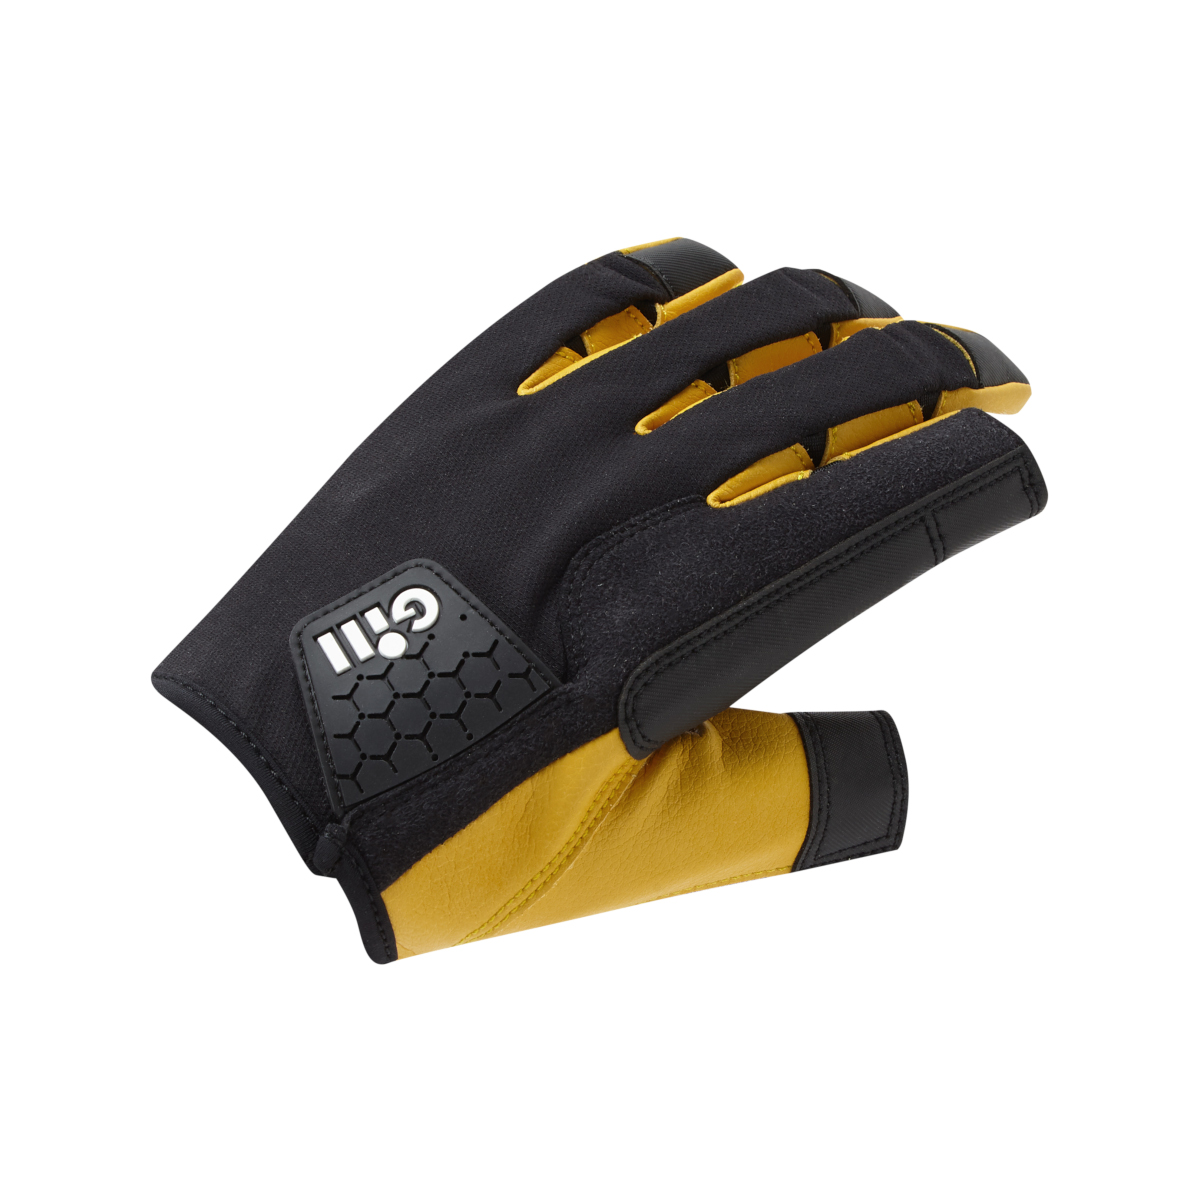 Gill Pro gants de voile à doigts longs - noir, taille XL